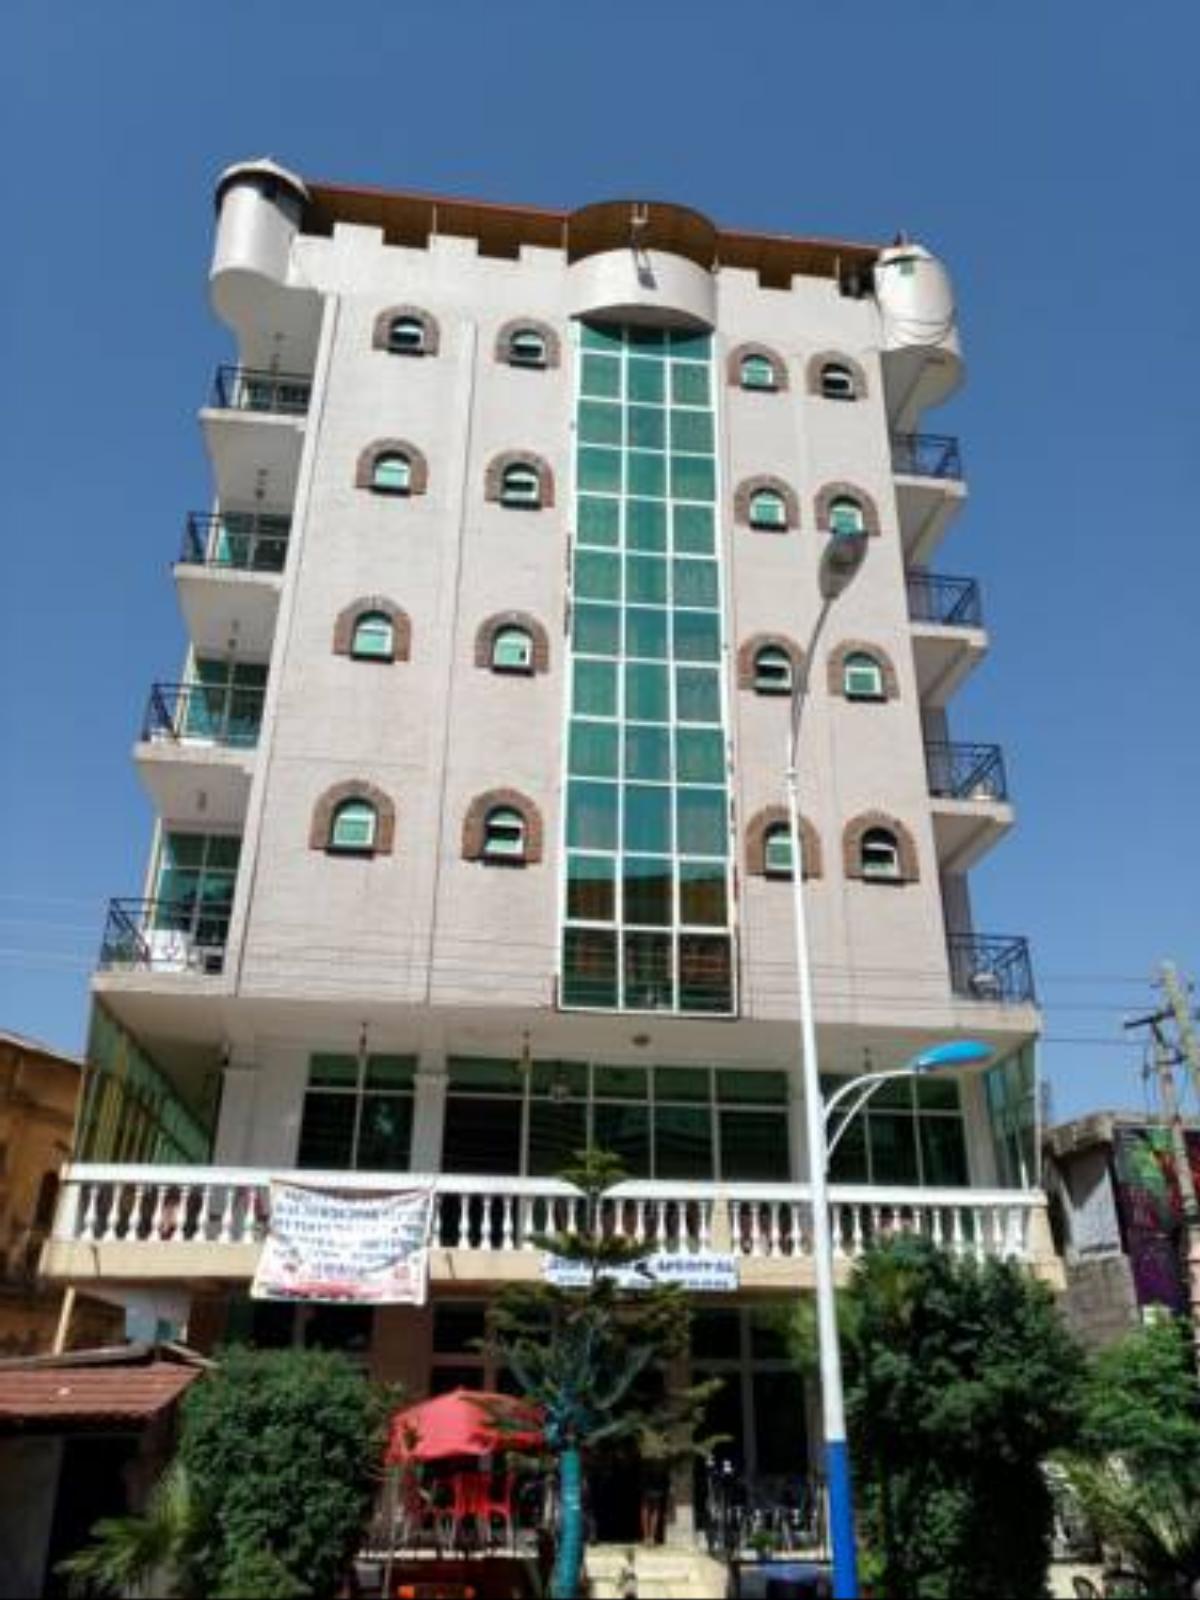 Ras Genb Hotel Hotel Gonder Ethiopia